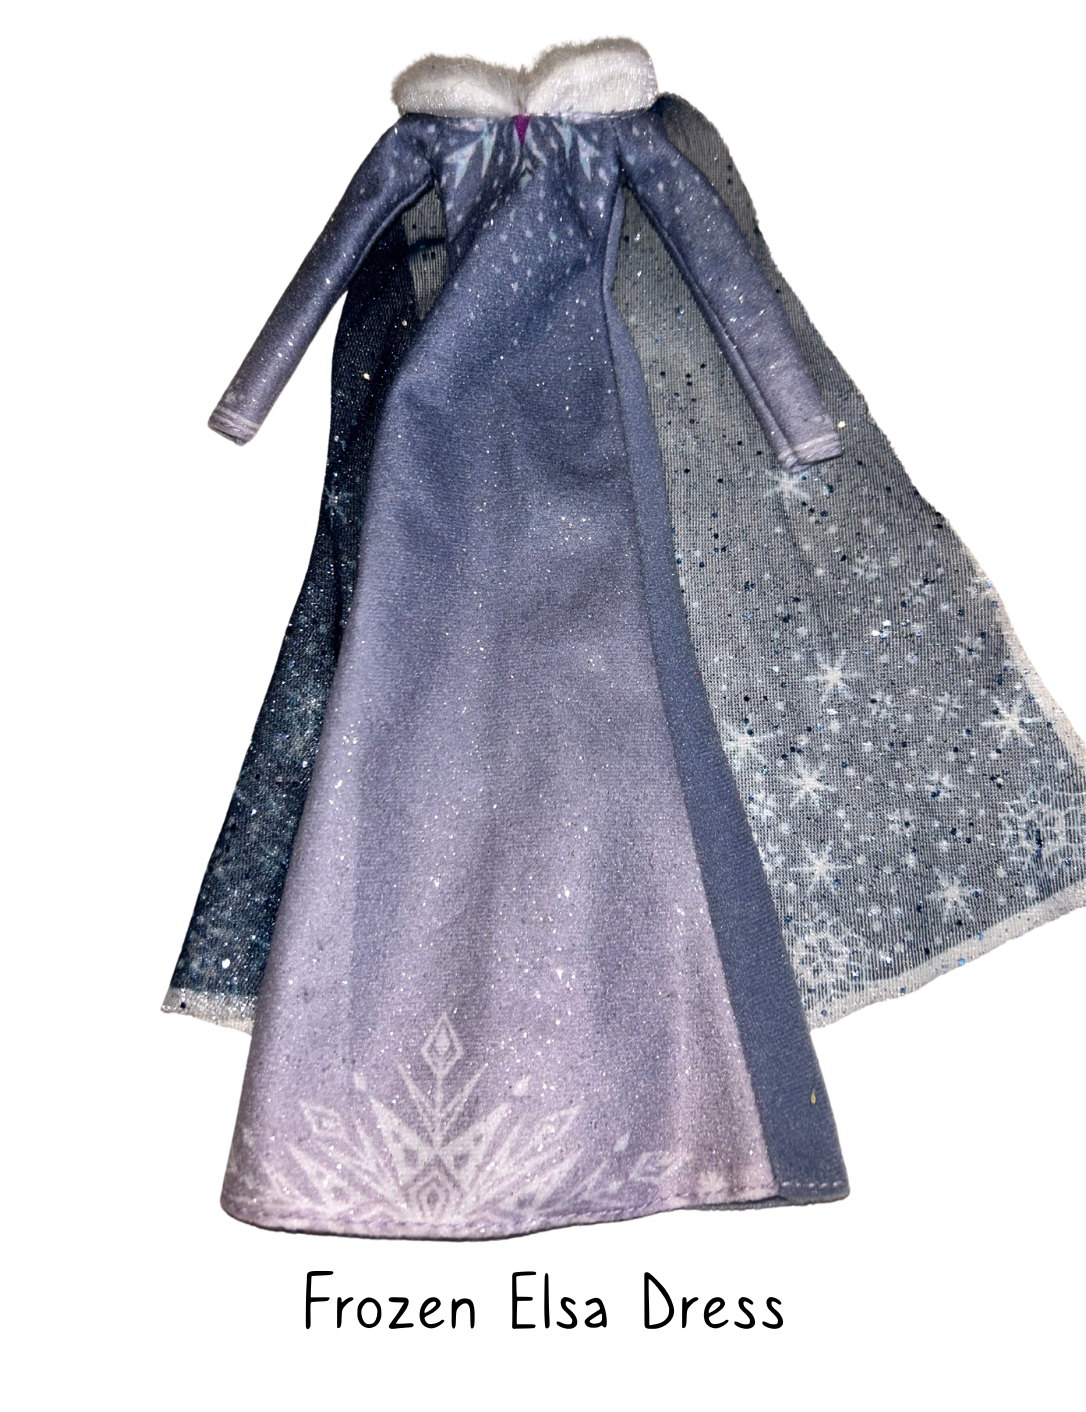 Disney Frozen Princess Elsa Fashion Doll Dress